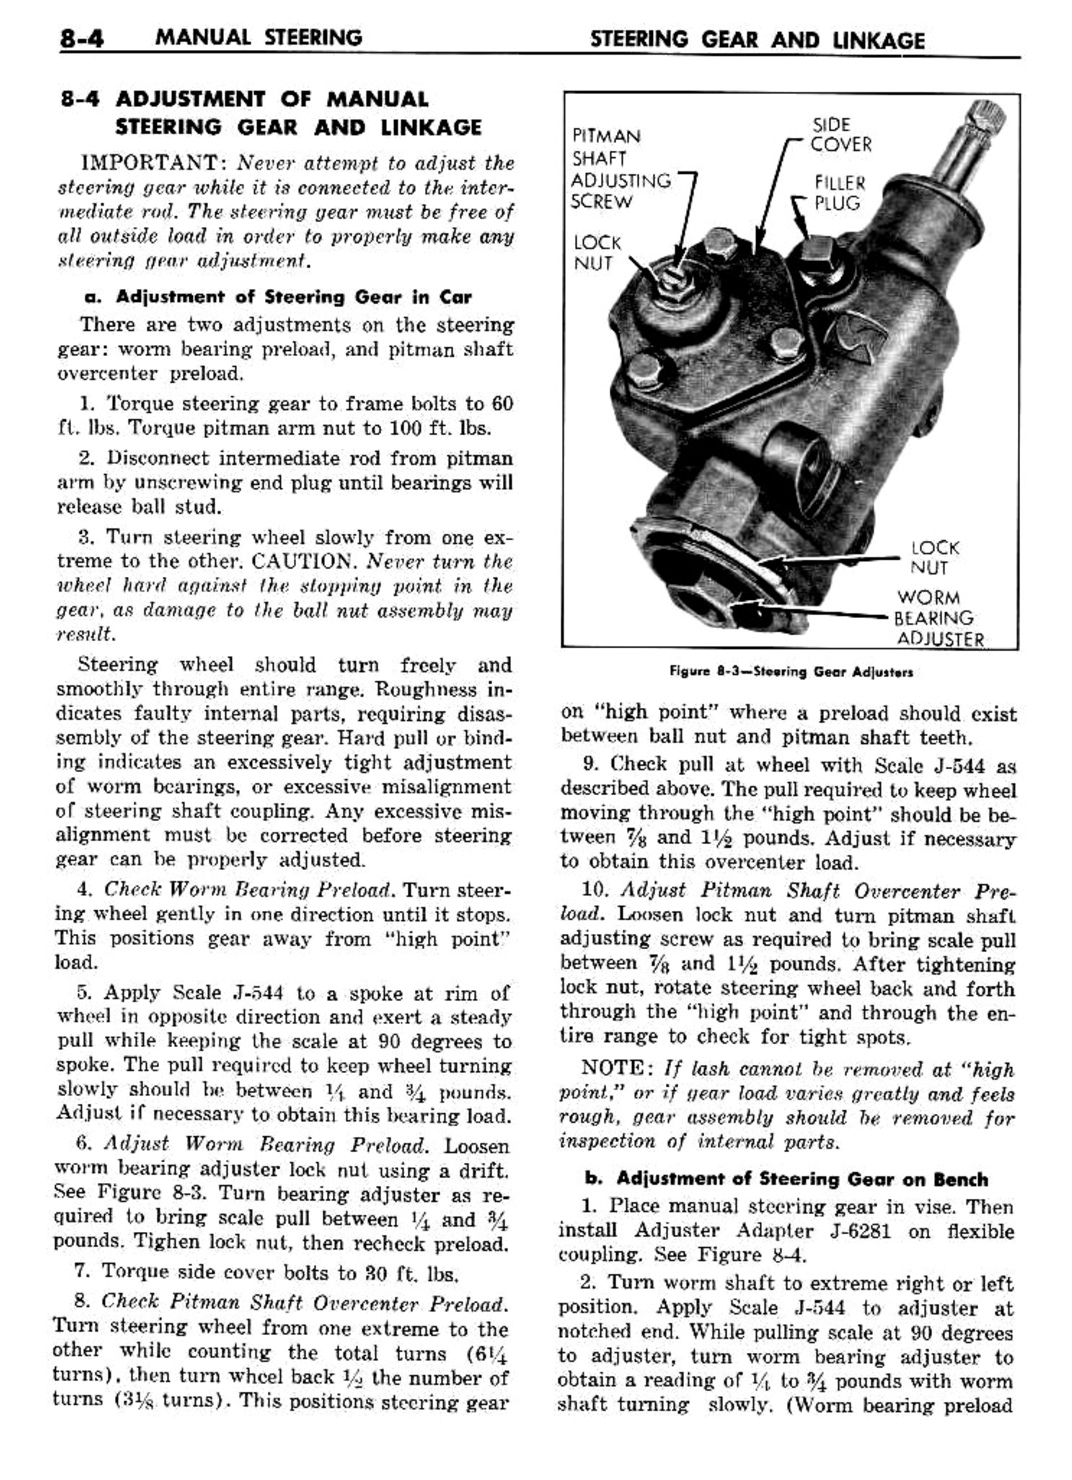 n_09 1960 Buick Shop Manual - Steering-004-004.jpg